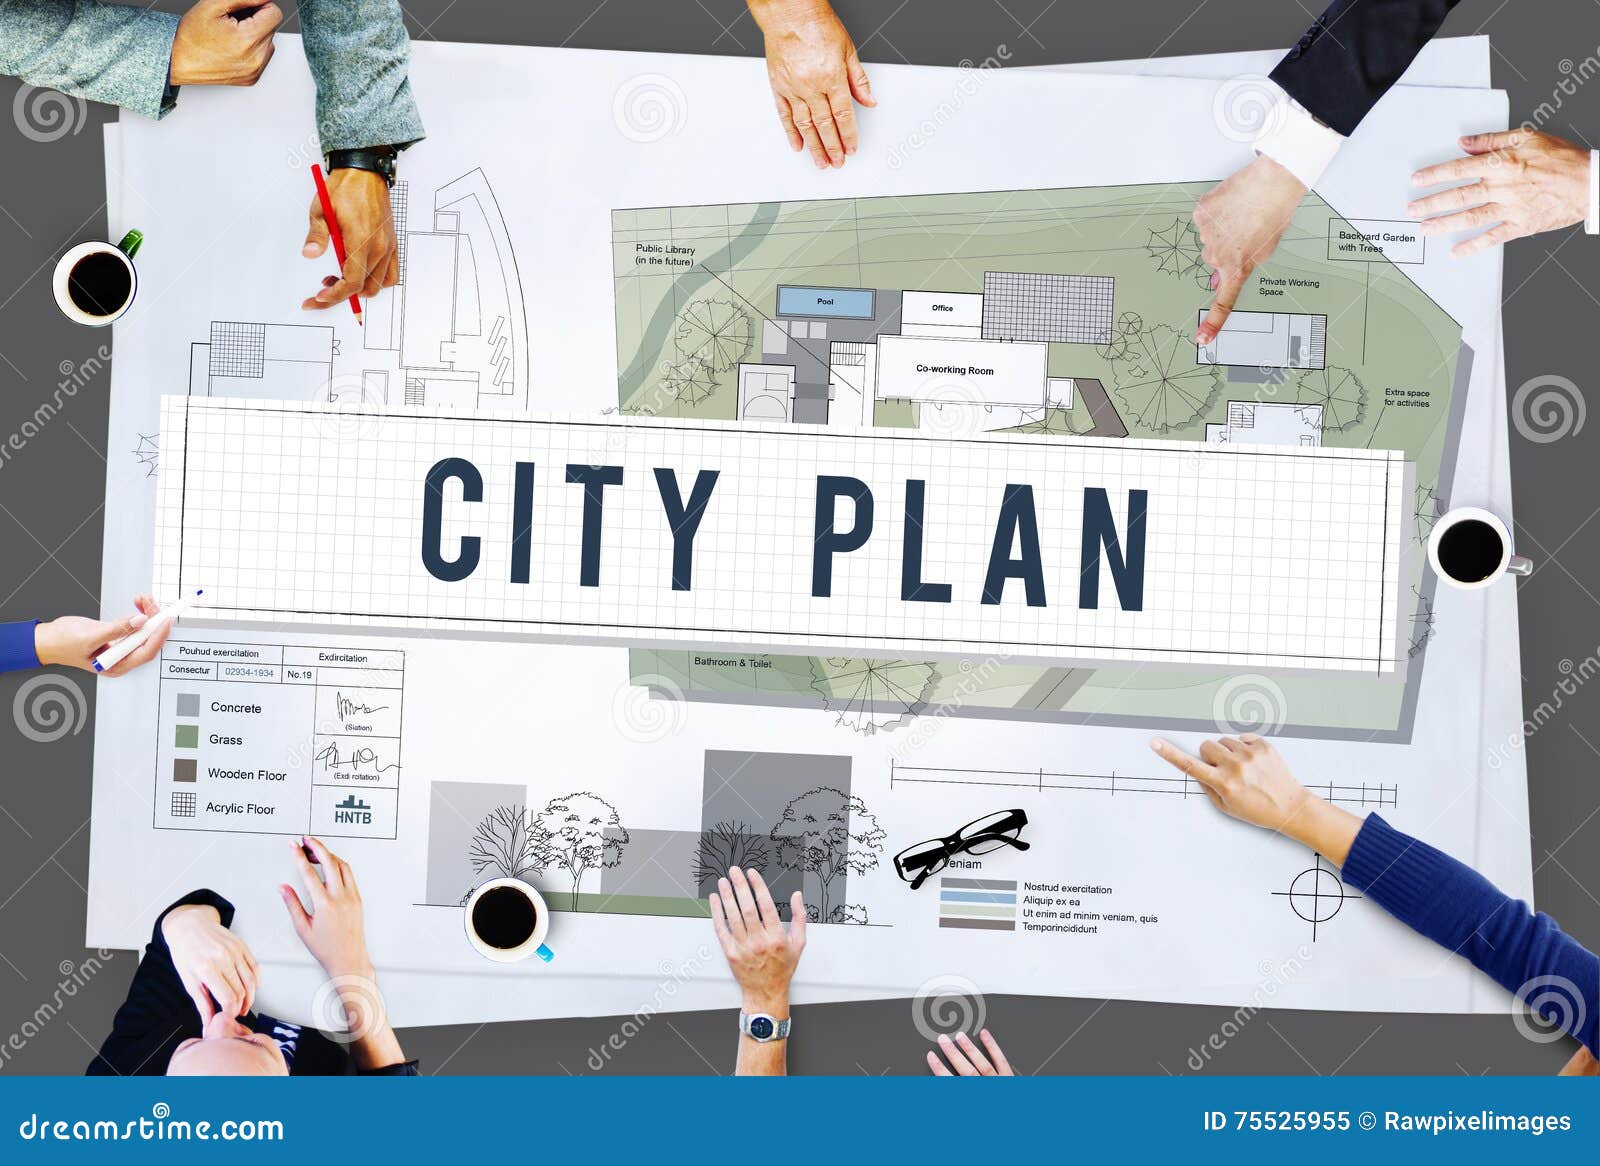 city plan municipality community town management concept